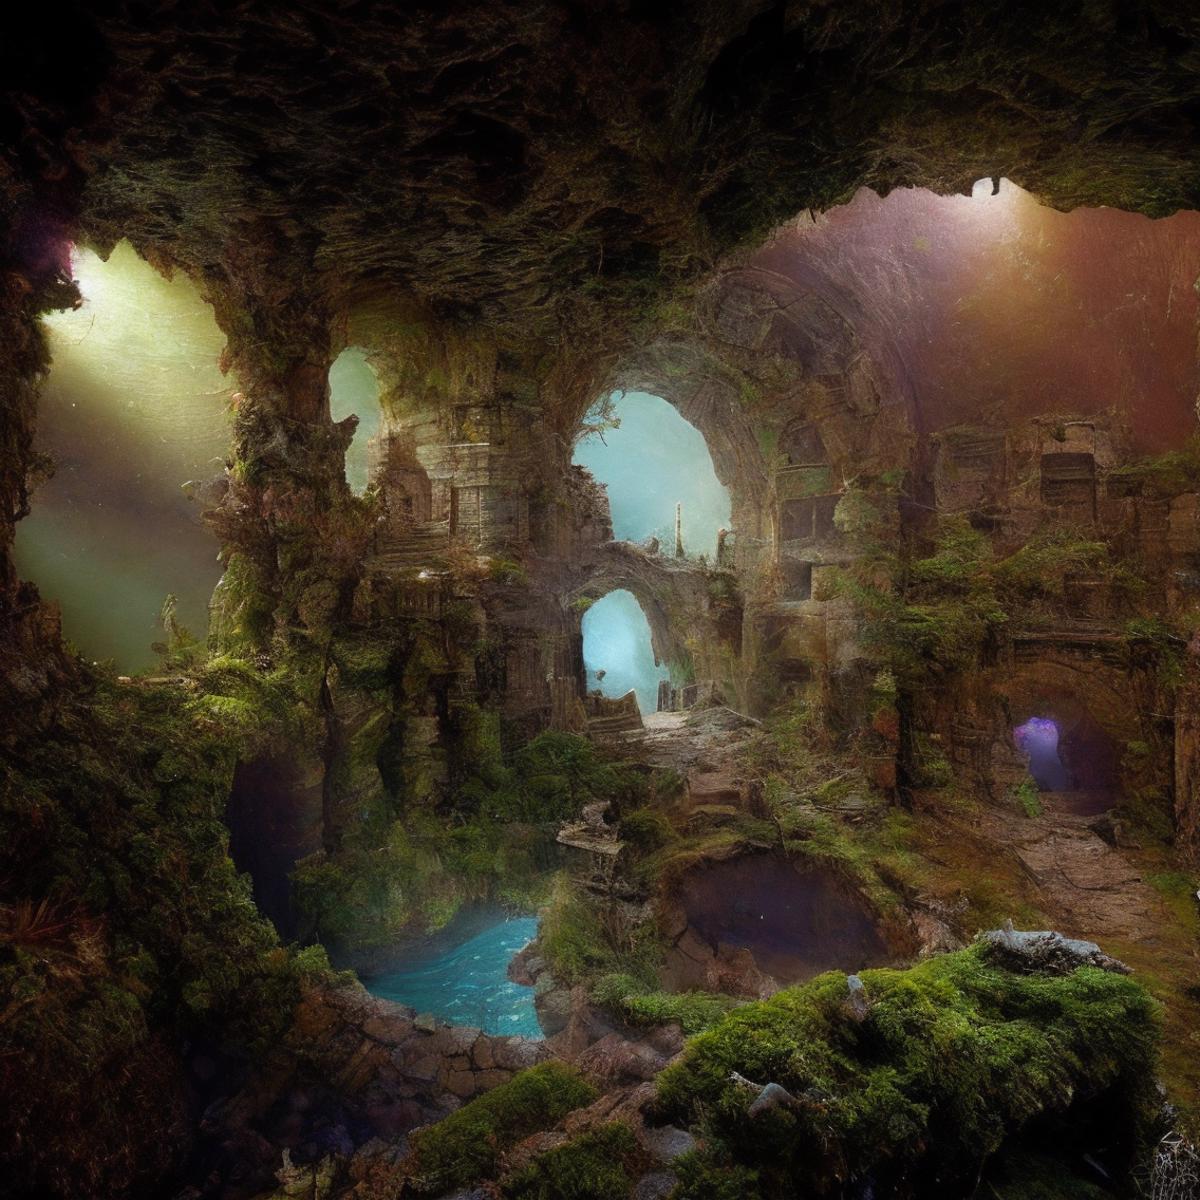 Fantasy Underground image by ericheisner650